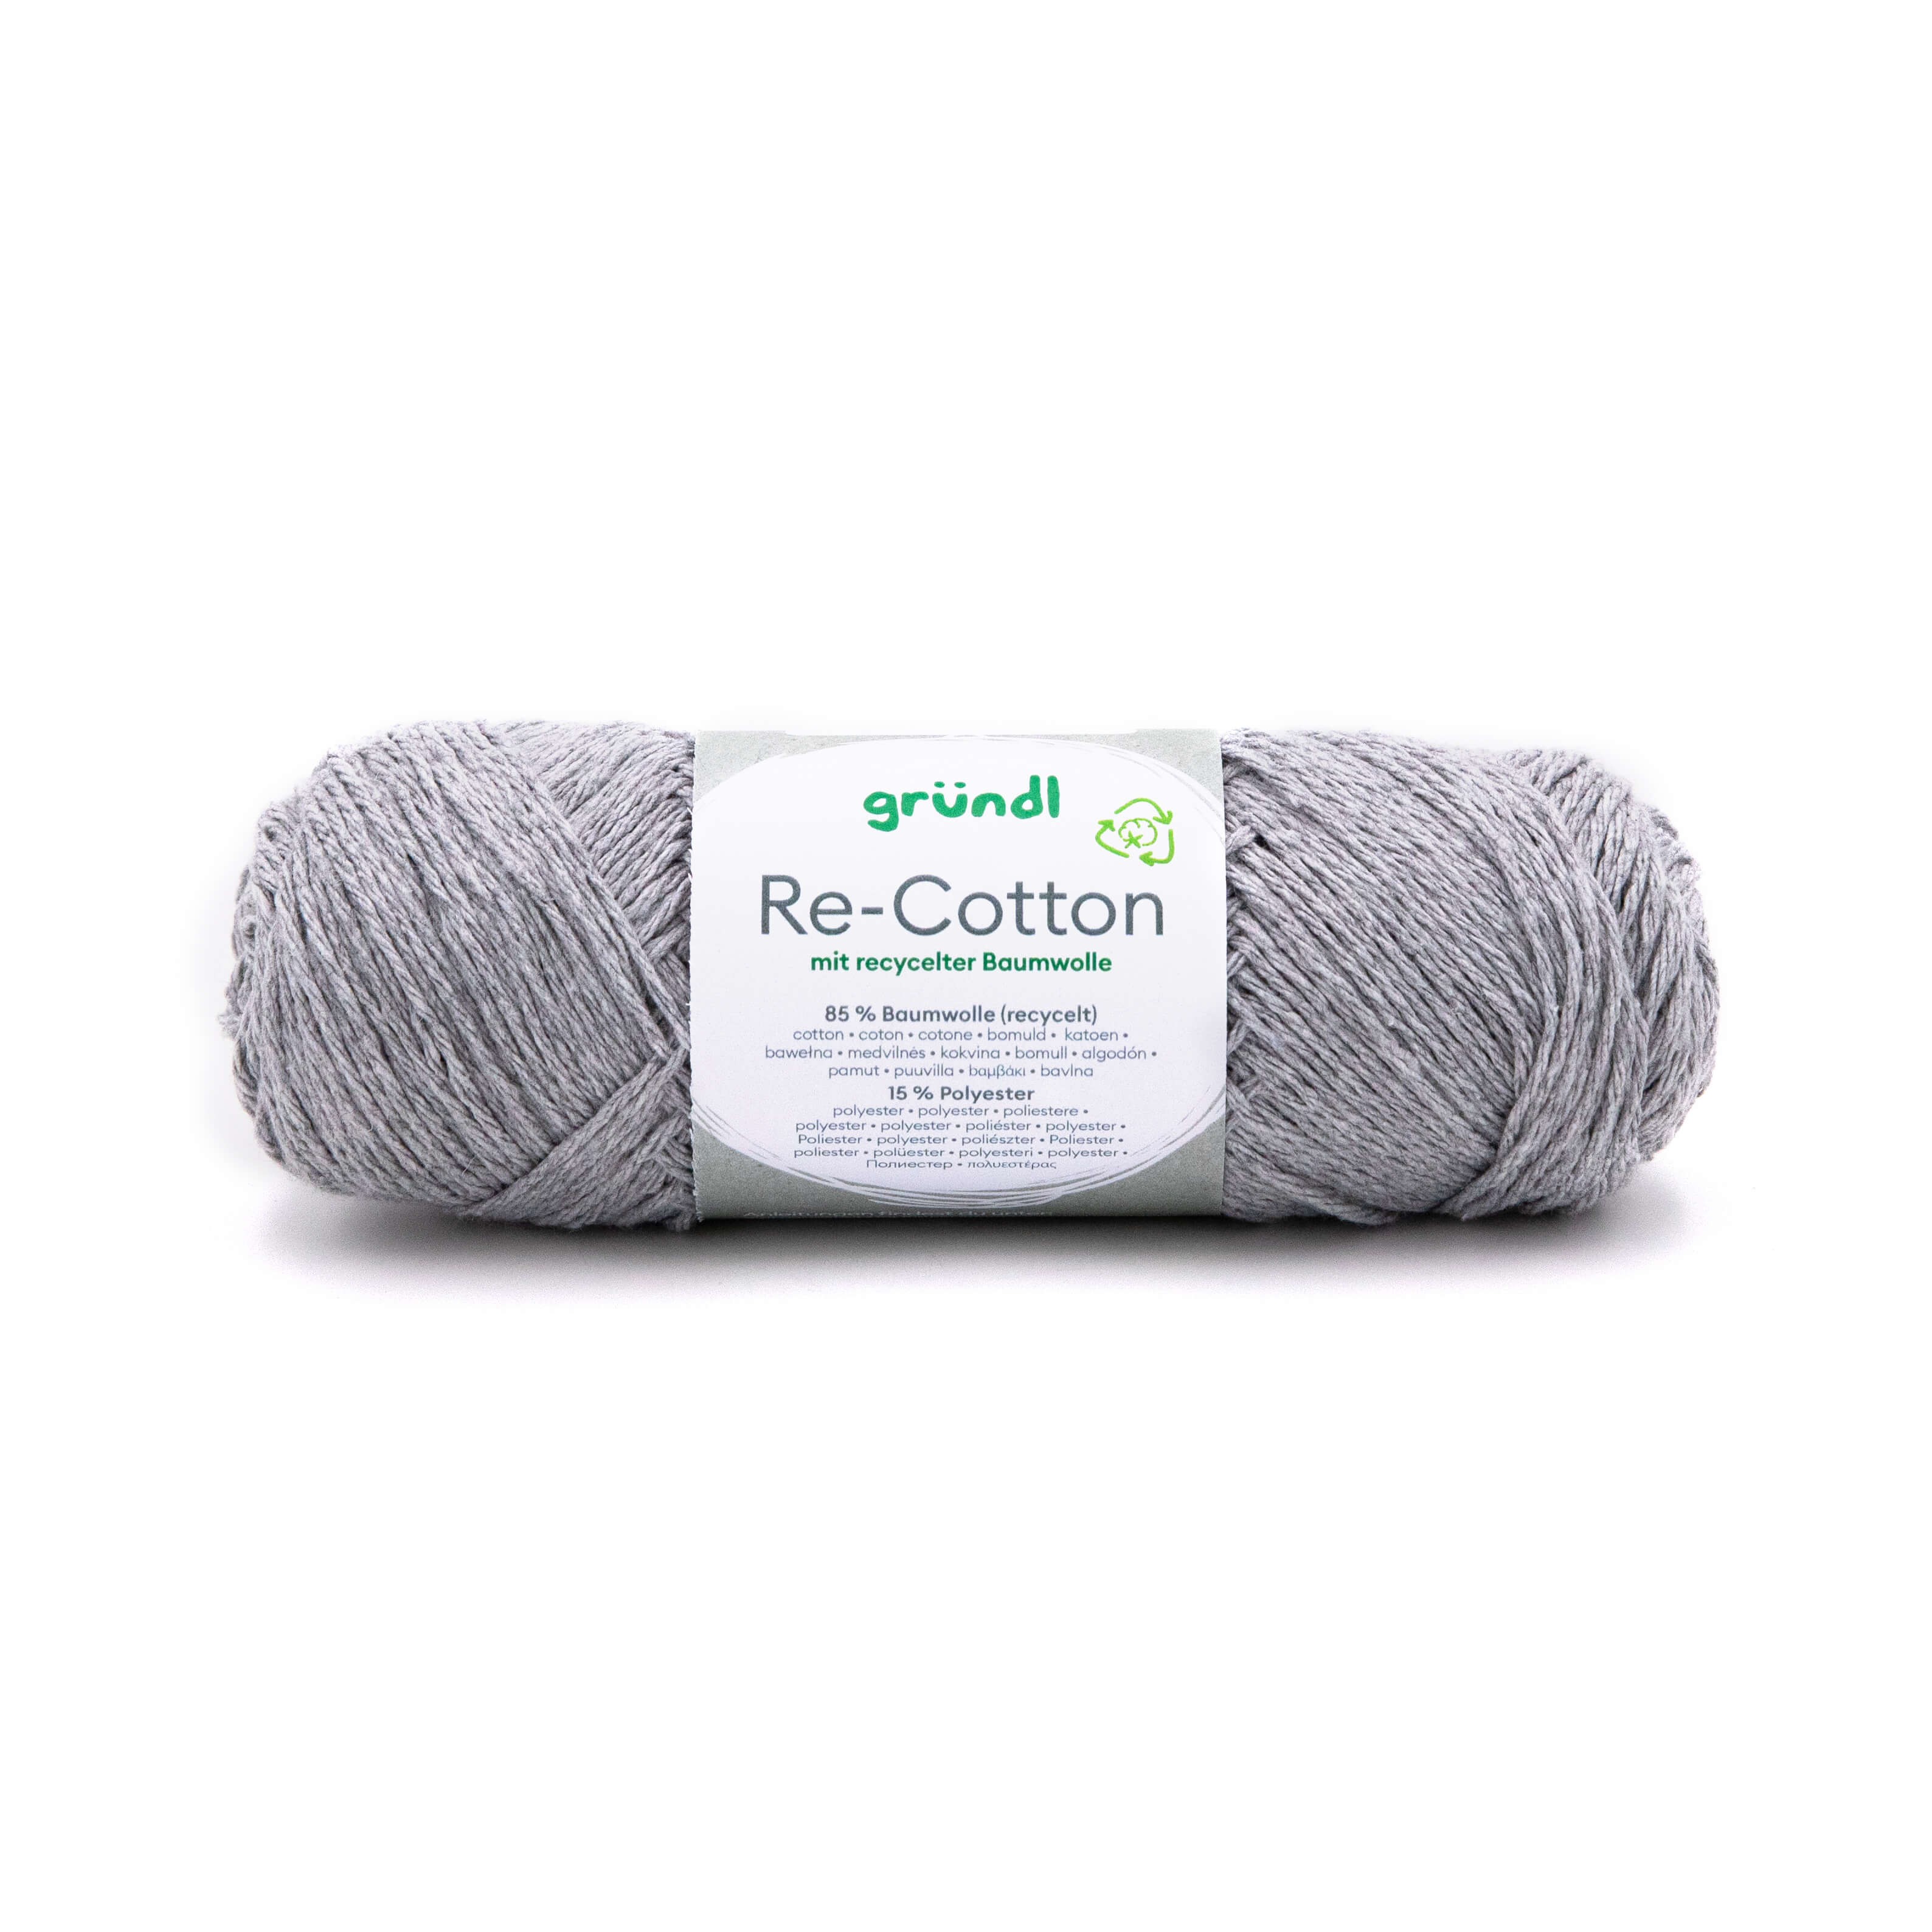 Re-Cotton